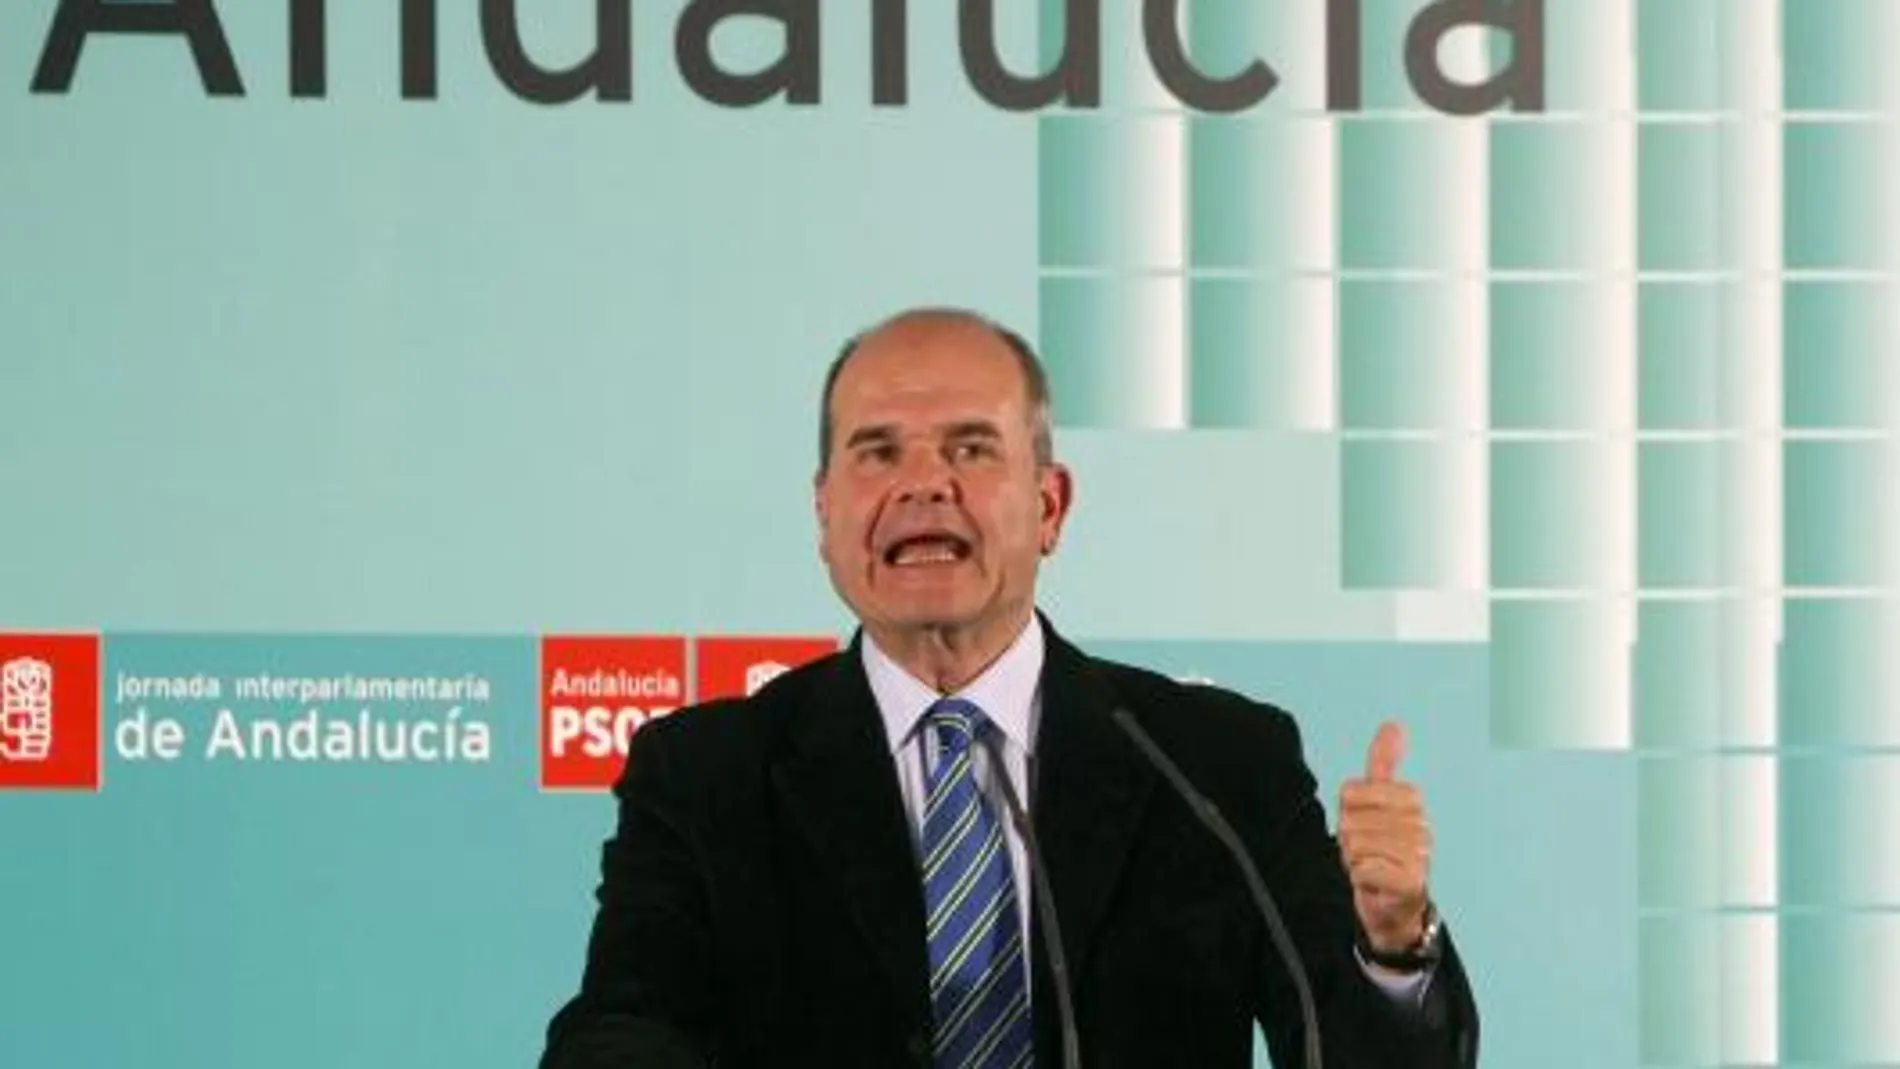 Chaves regresa al Gobierno central tras 19 años al frente de la Presidencia de la Junta de Andalucía